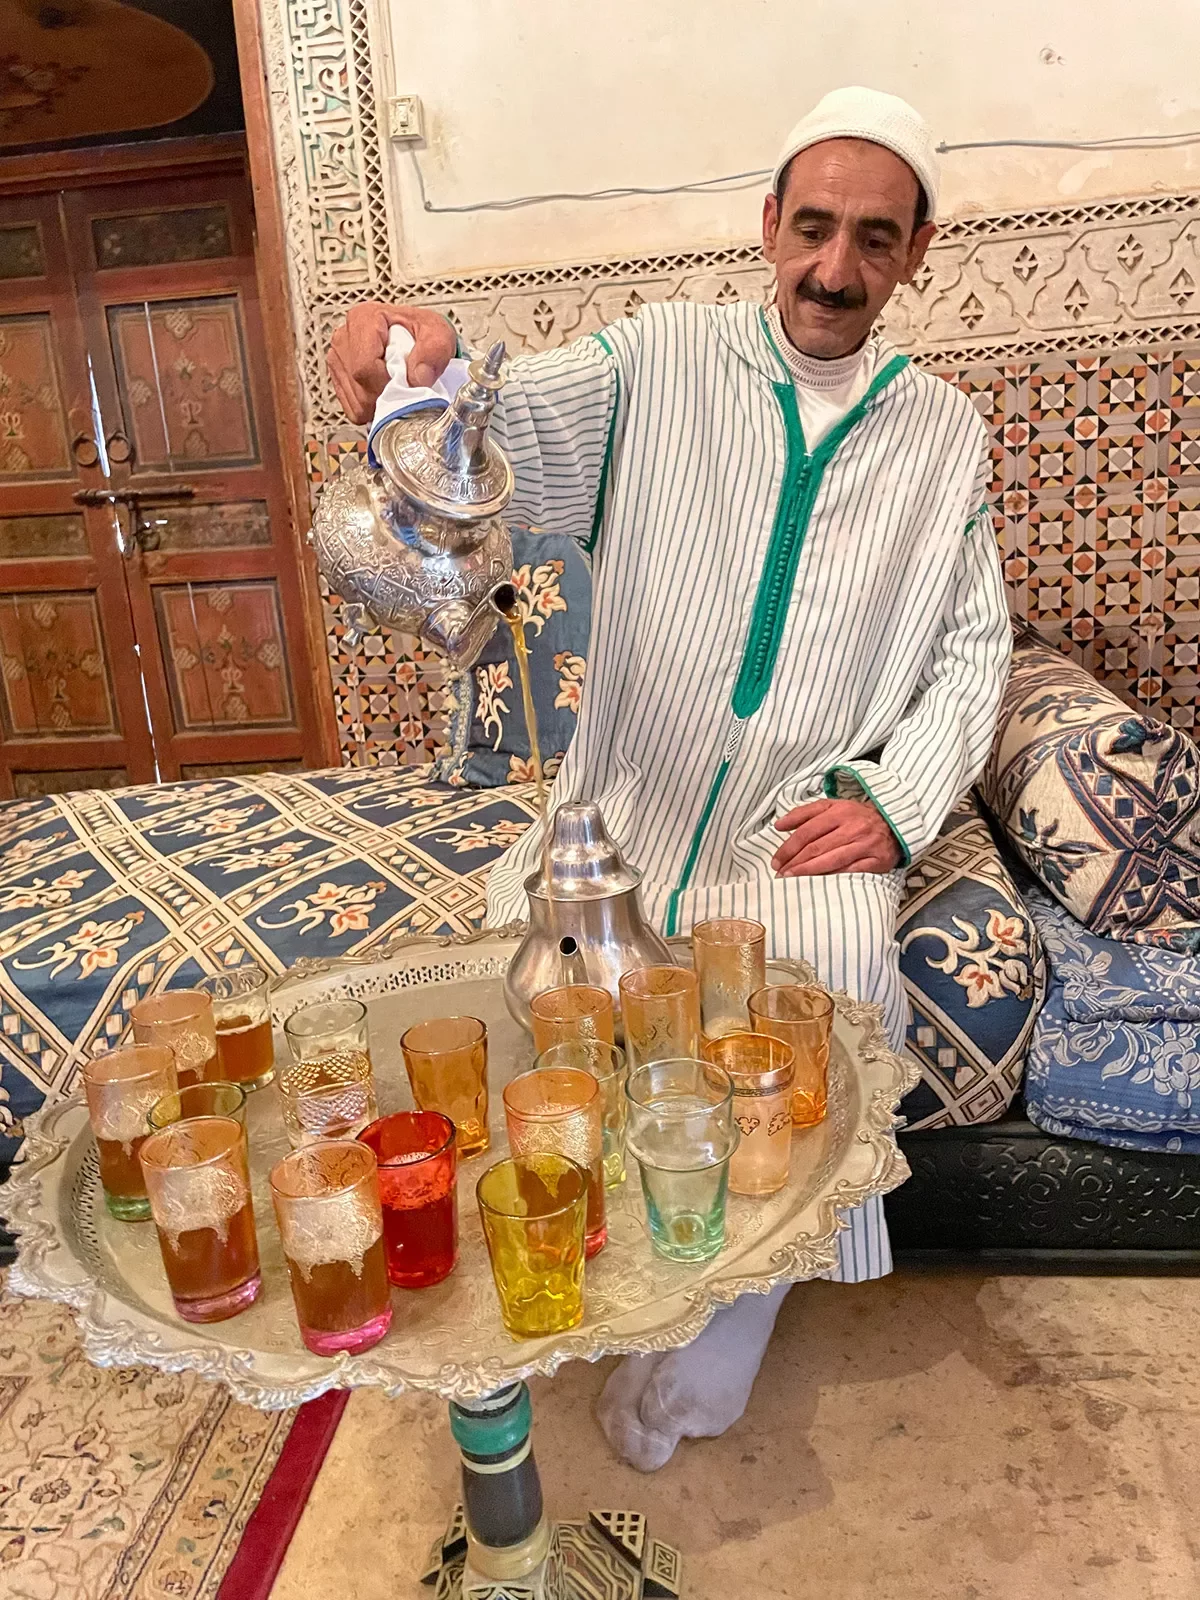 Vendor preparing tea